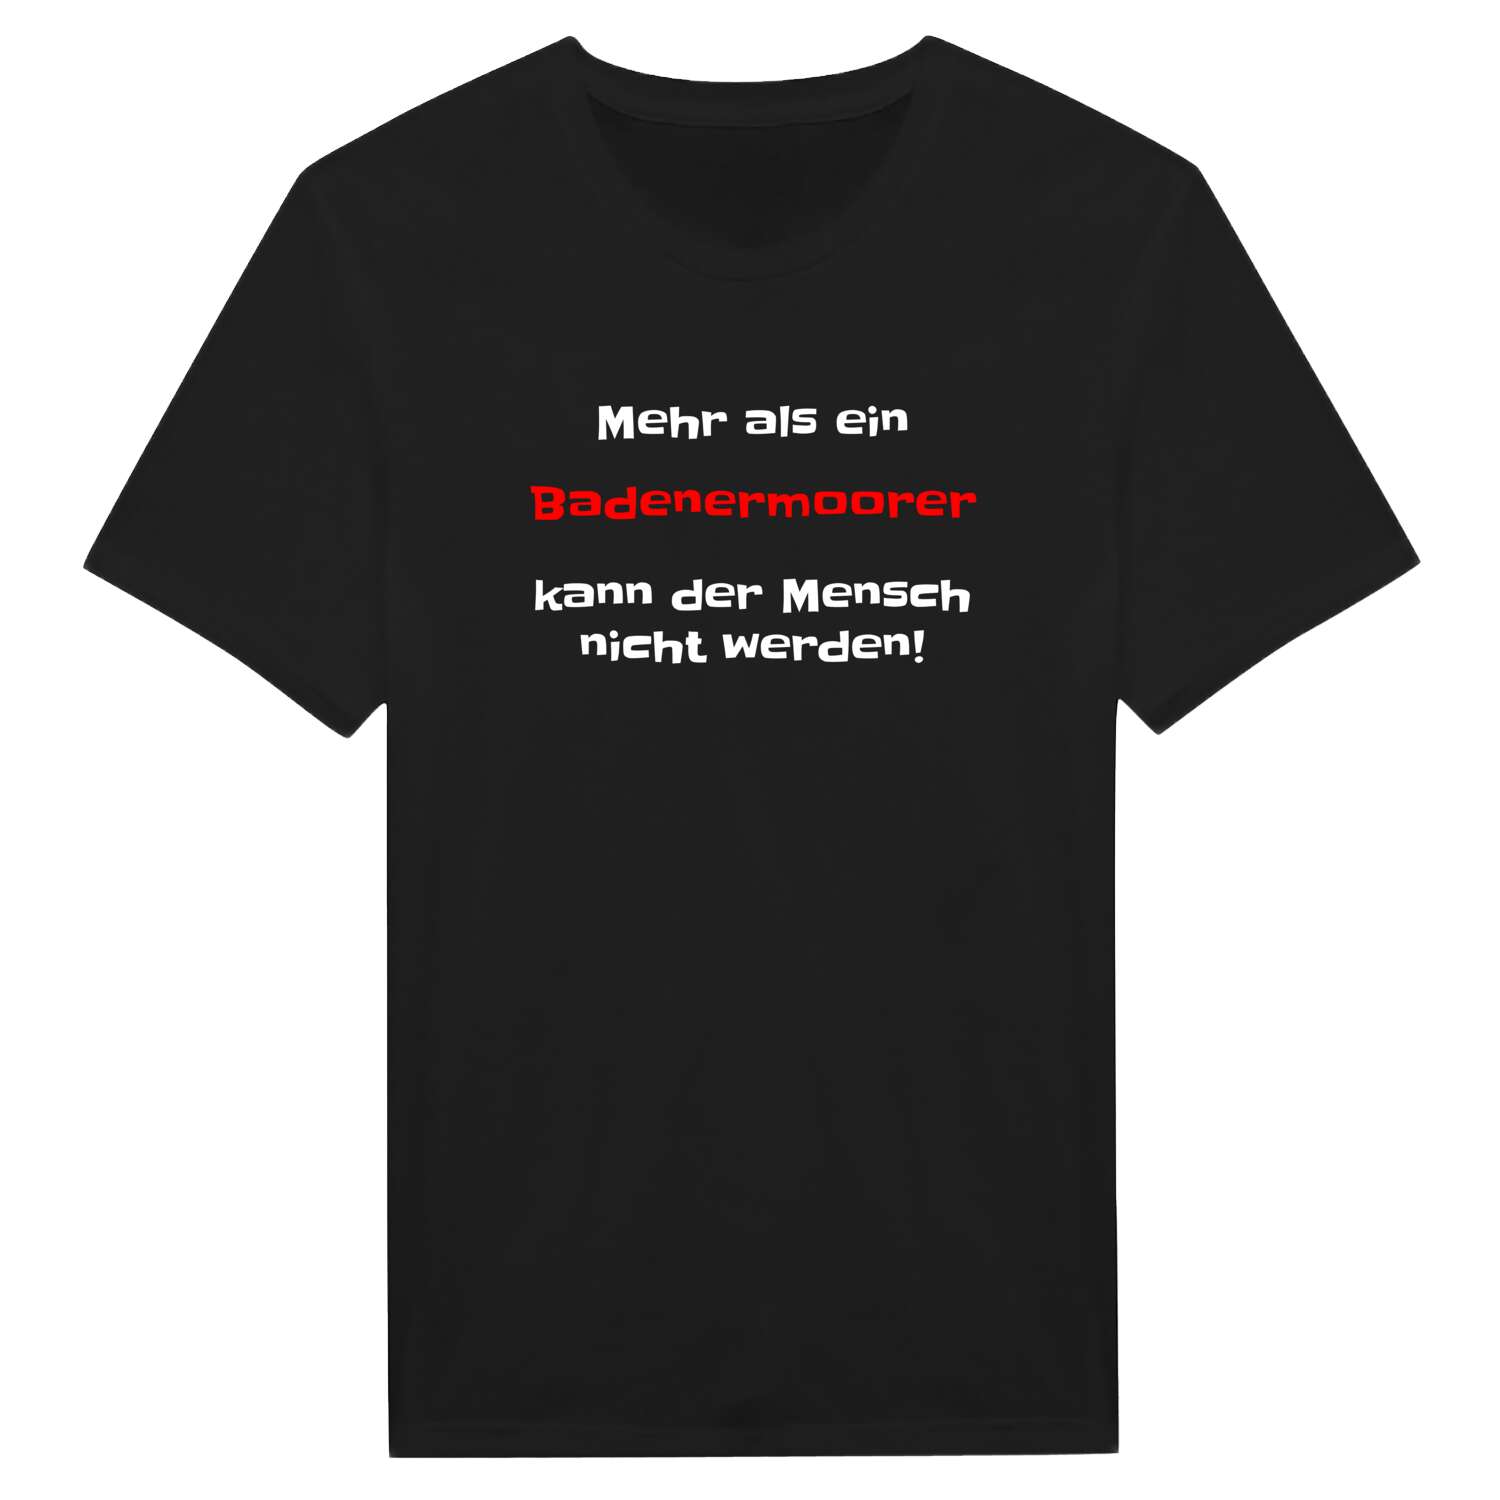 Badenermoor T-Shirt »Mehr als ein«